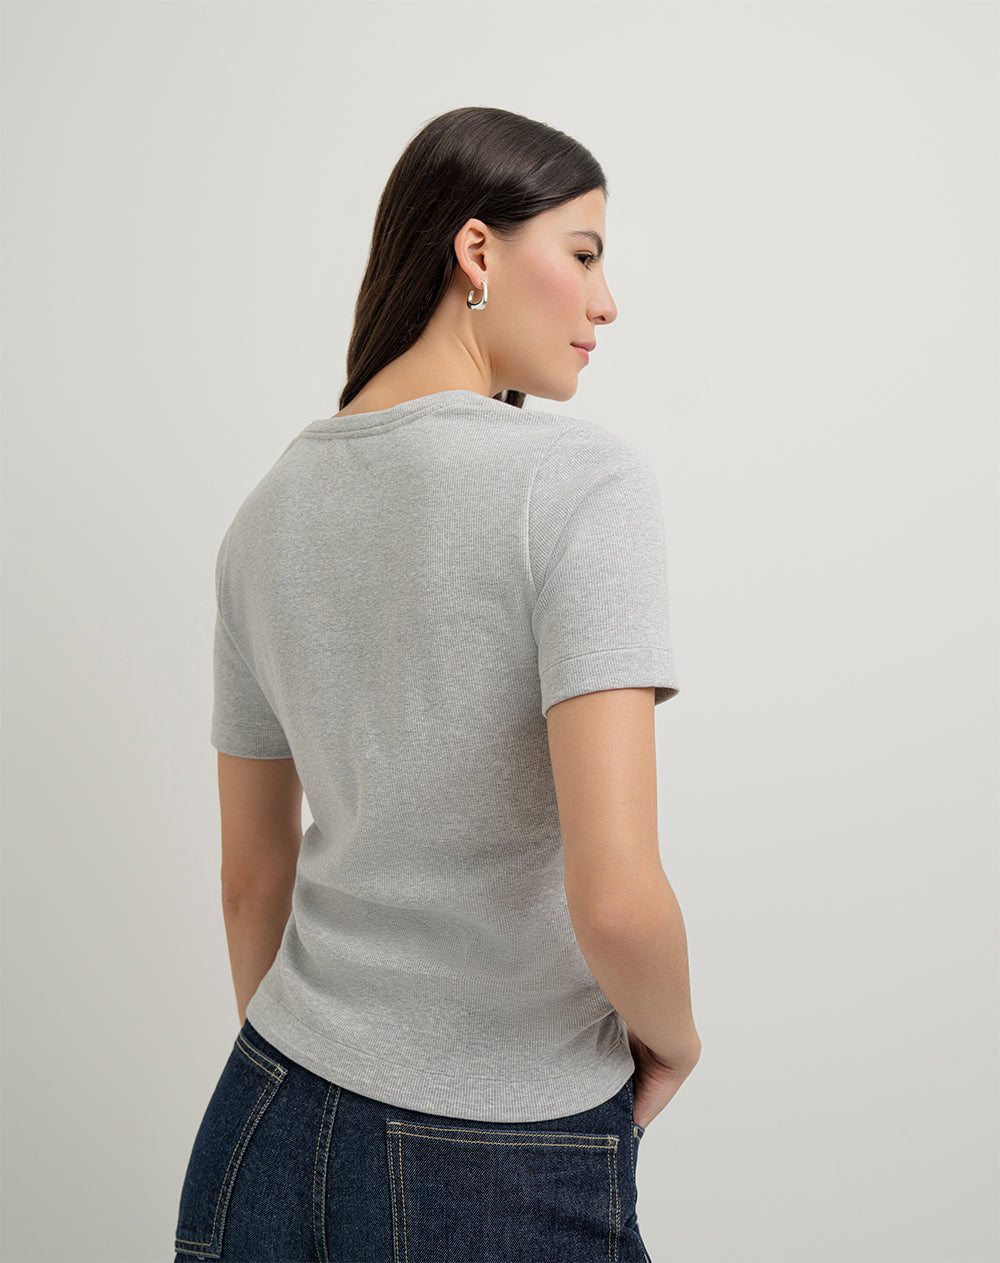 Camiseta luzuya slim fit manga corta gris jaspeada